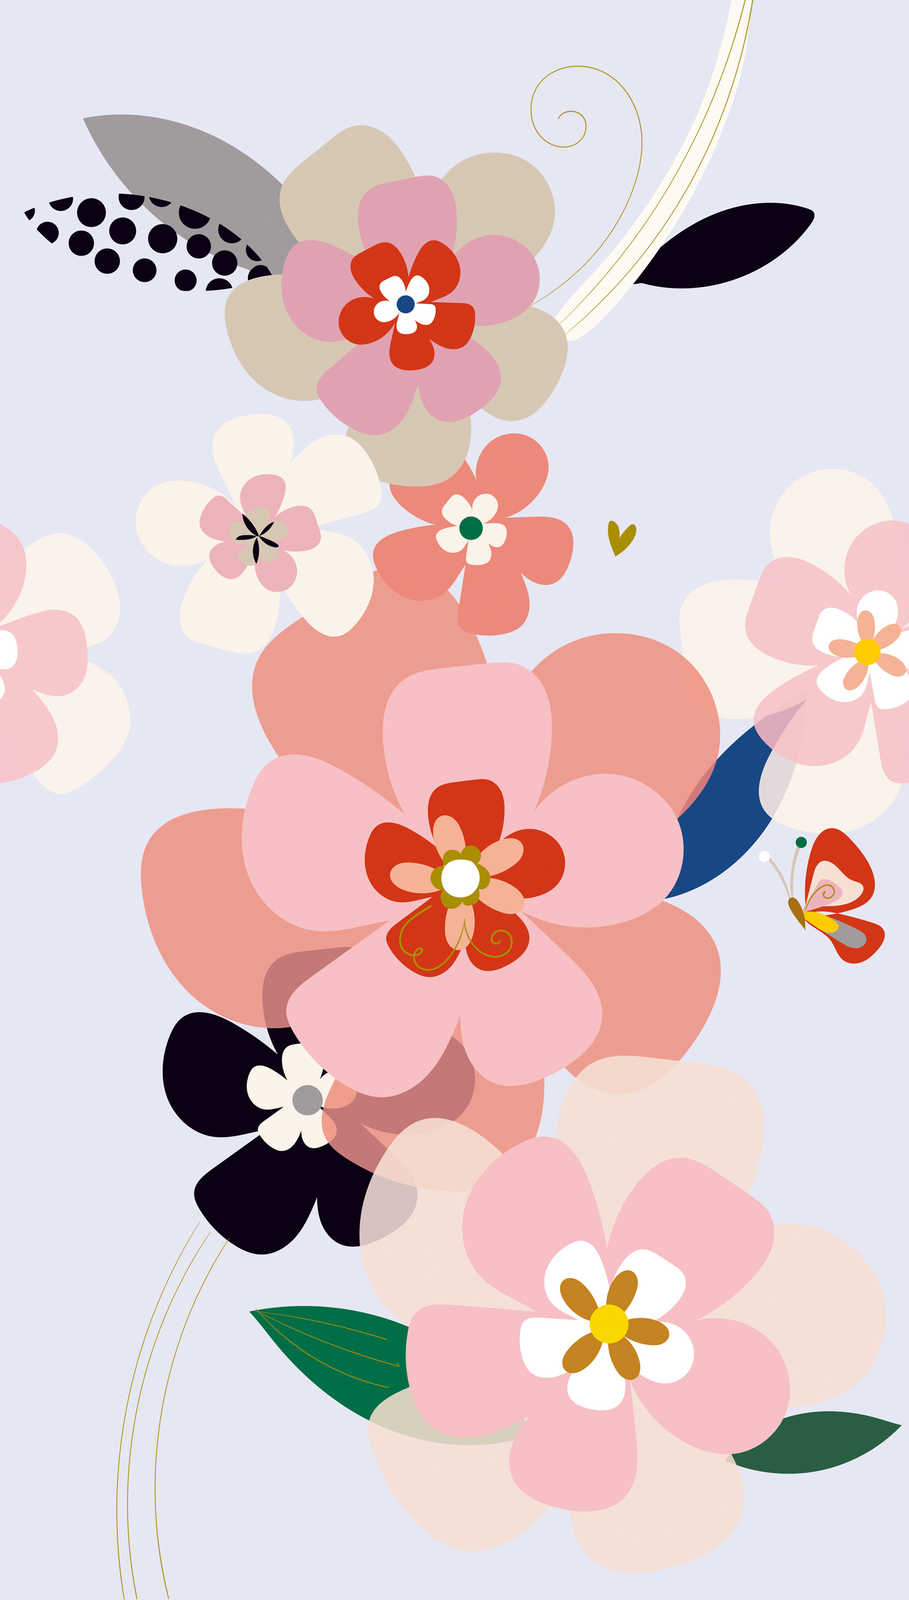             Grand papier peint à motifs floraux de style minimaliste - multicolore, rose, lilas
        